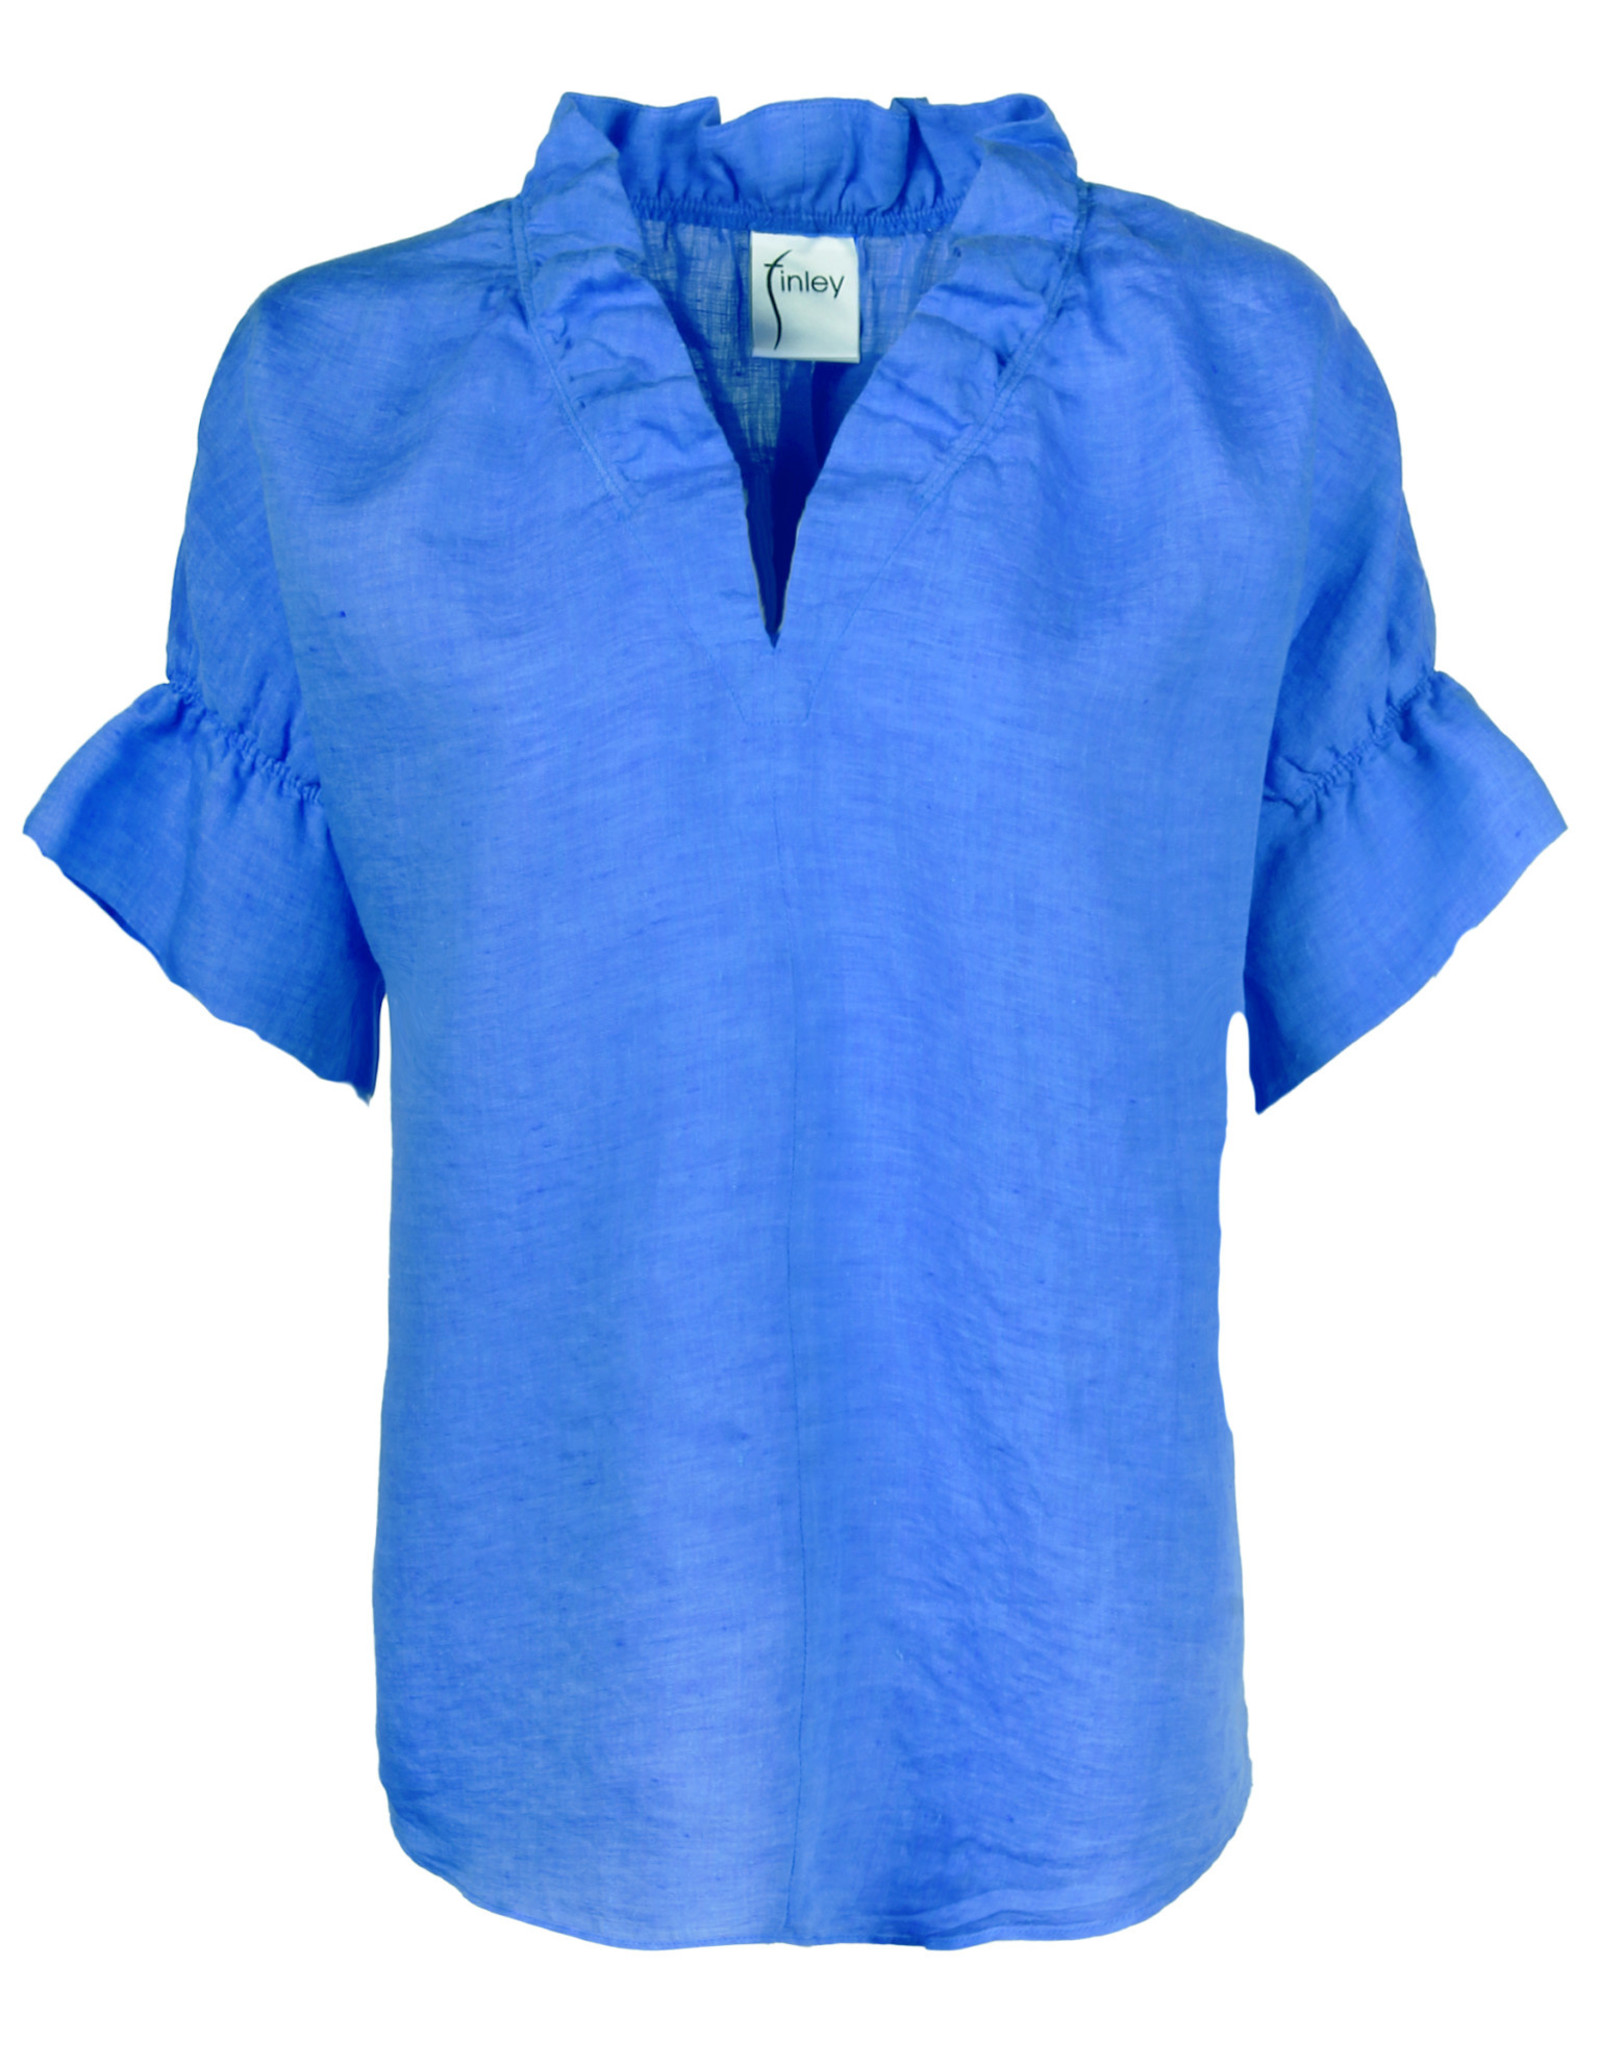 Finley Shirts Finley Crosby Linen Sapphire Top